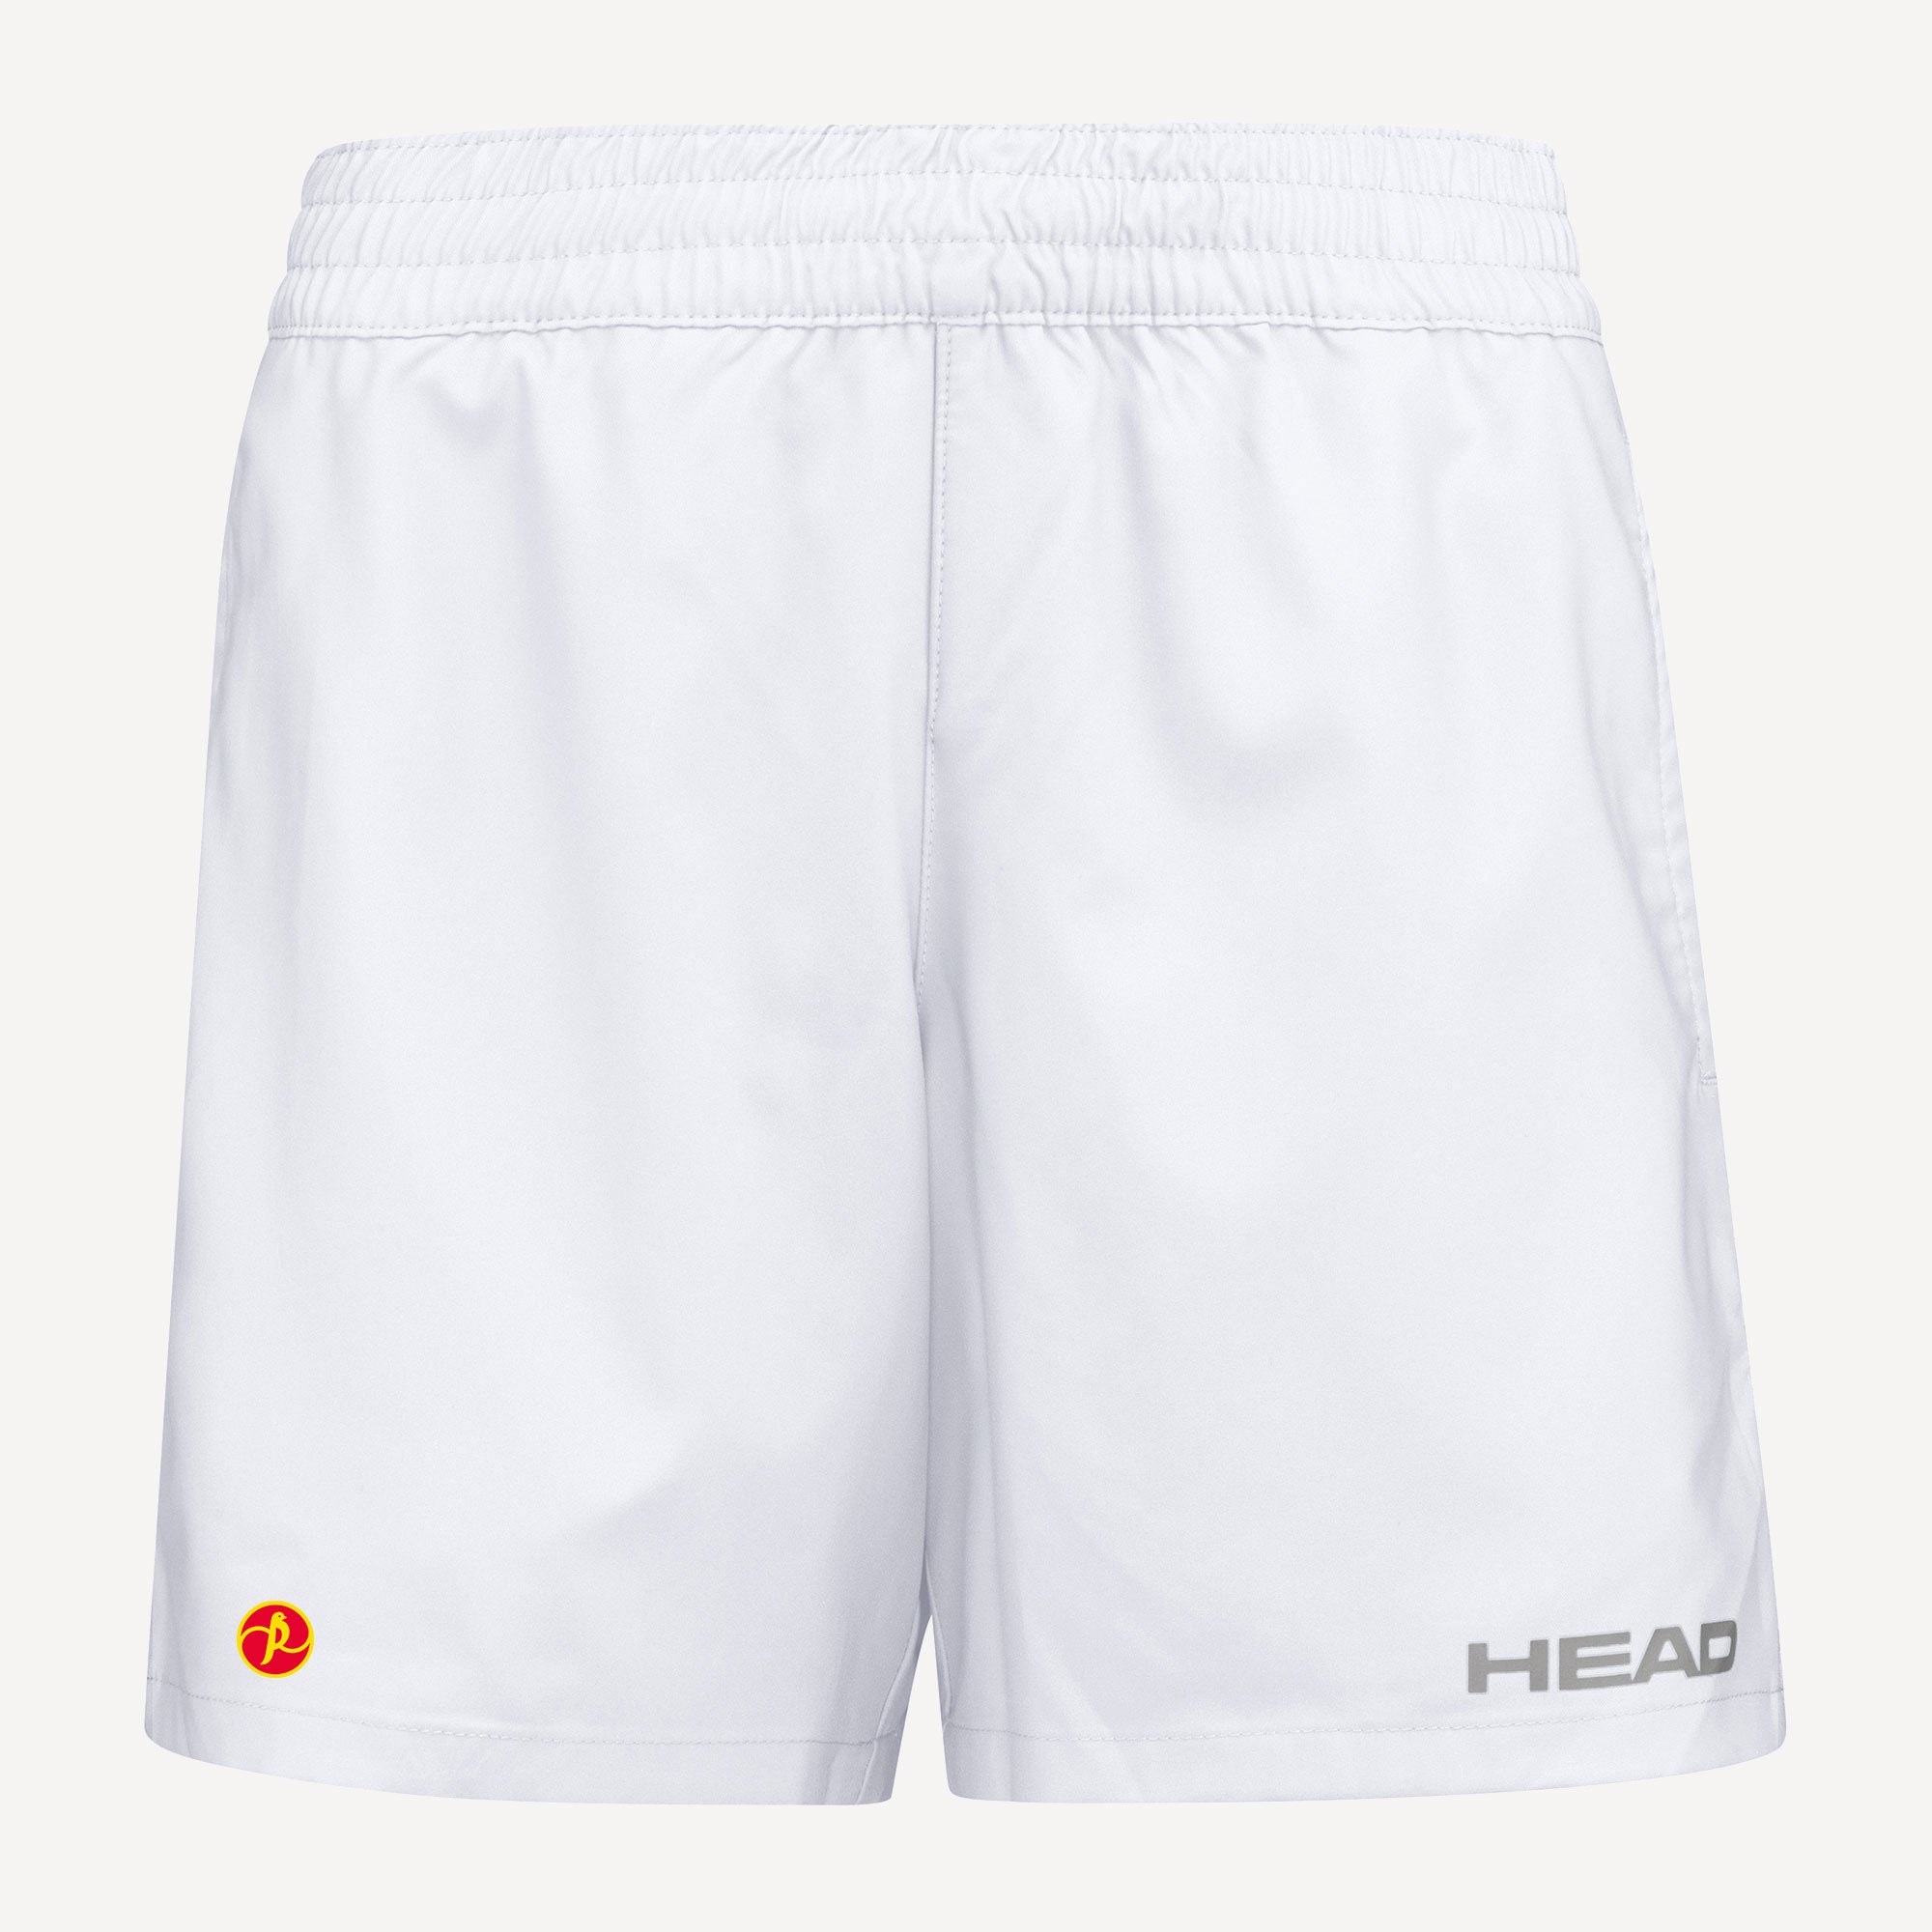 HEAD Club Women's Tennis Shorts White (1)